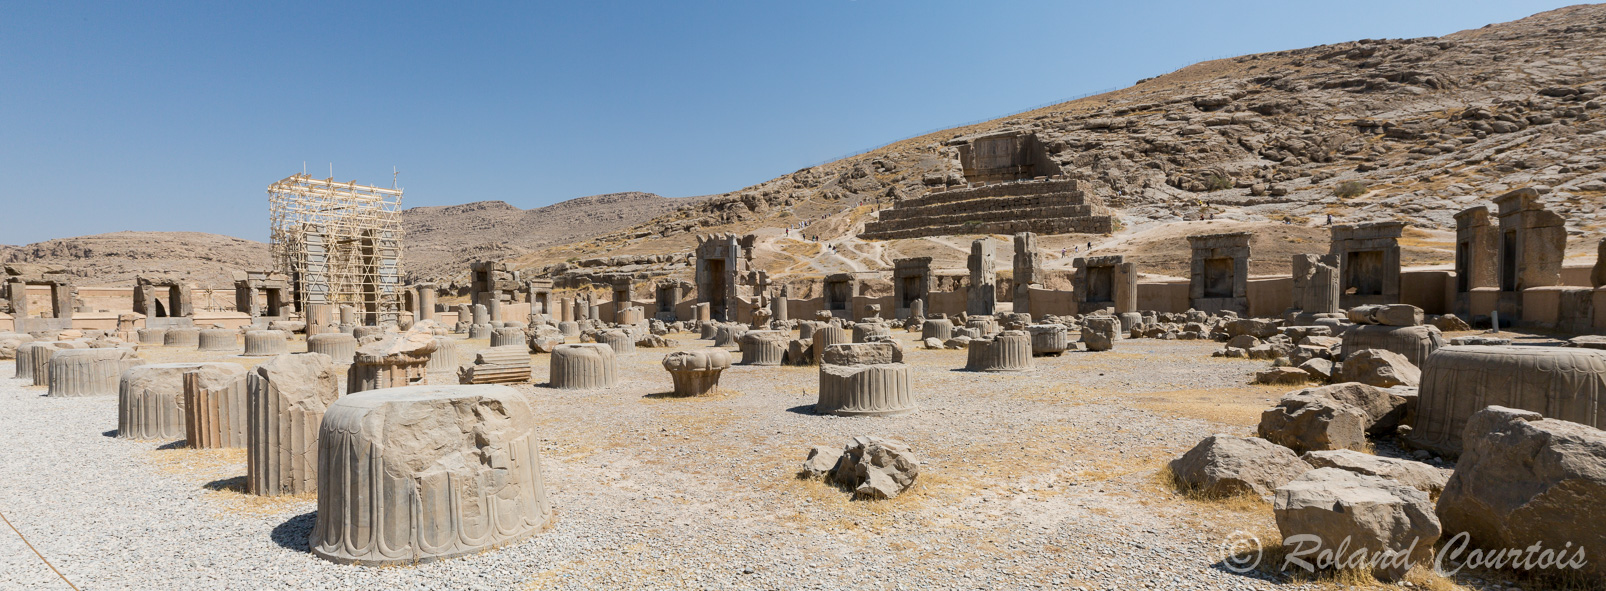 Persepolis : La salle aux Cent Colonnes ou salle du Trône, édifiée par Xerxès : Il est probable qu’une importante cérémonie s’y déroulait .